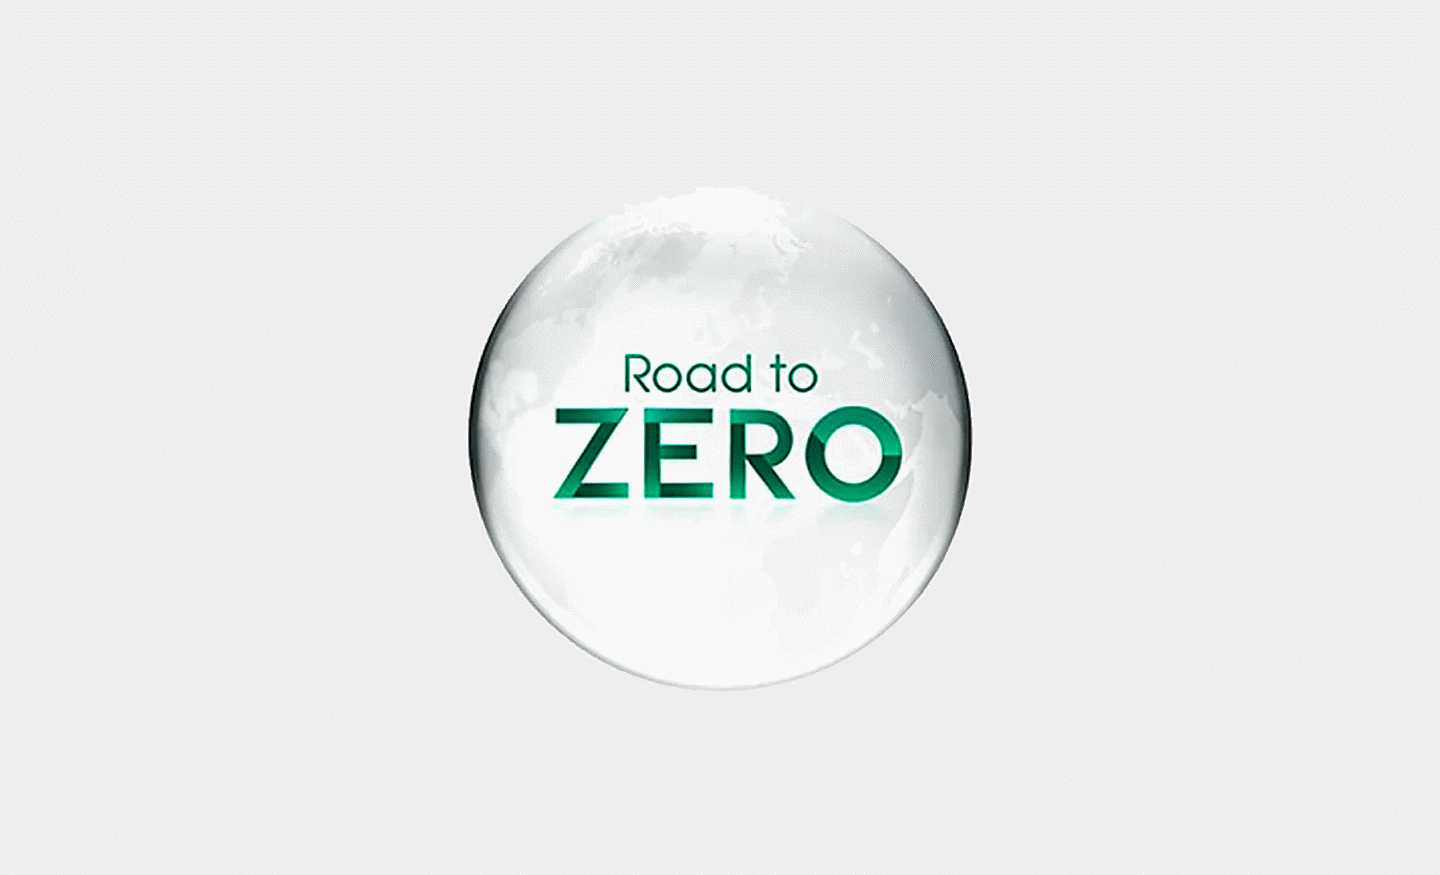 The "Road to Zero" logo